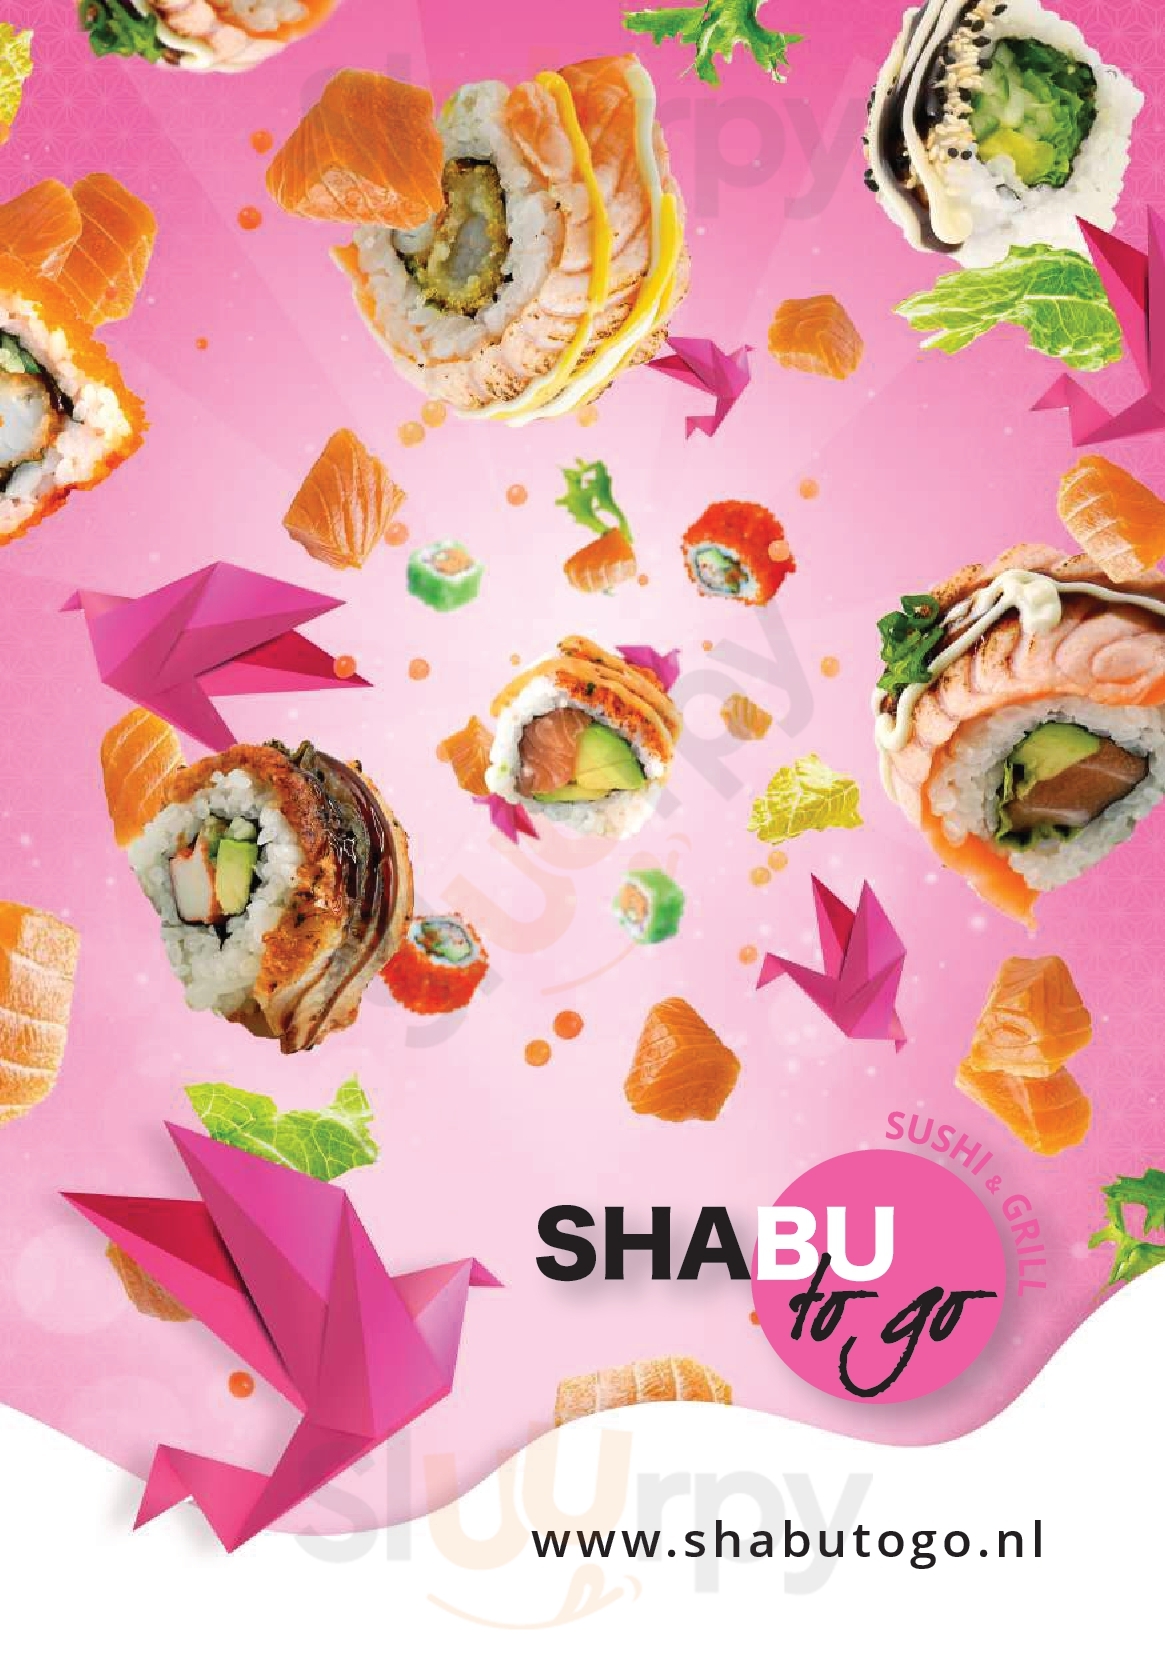 Shabu To Go Sushi & Grill Amsterdam Menu - 1